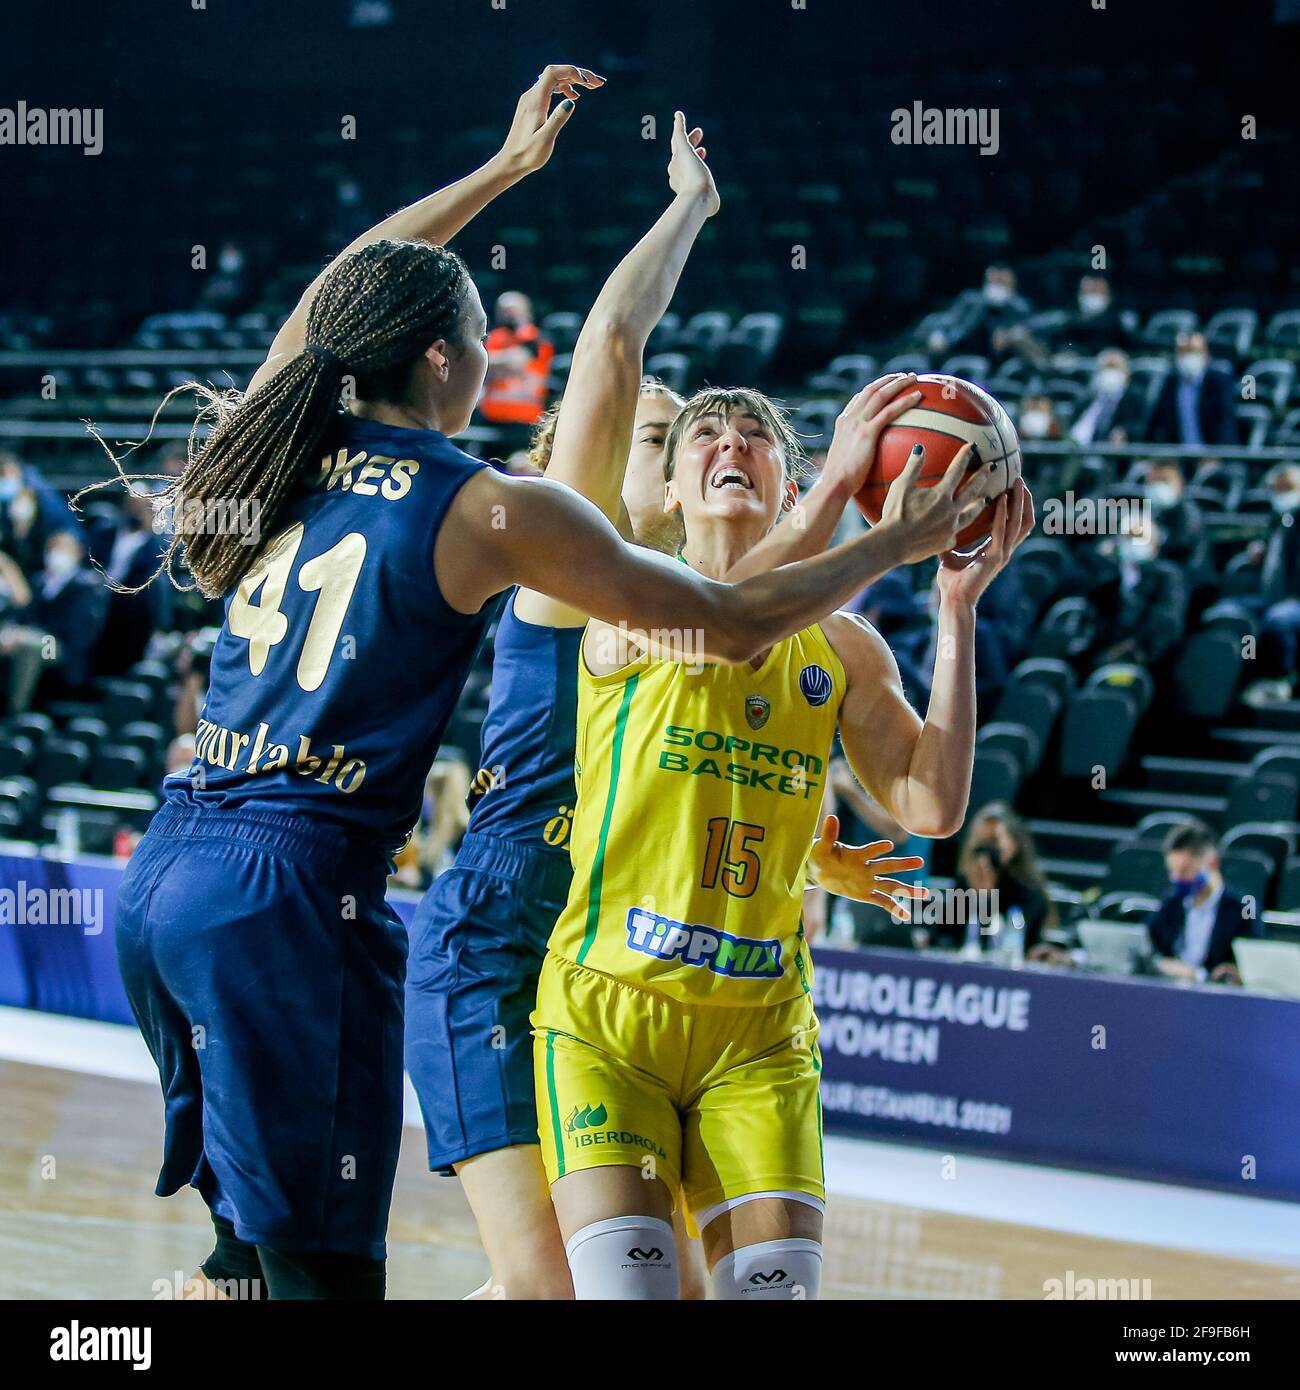 ISTANBUL, TÜRKEI - 18. APRIL: Tina Krajisnik von Sopron Basket während des  EuroLeague Women-Matches zwischen Sopron Basket und Fenerbahce Oznur Kablo  in Vol Stockfotografie - Alamy